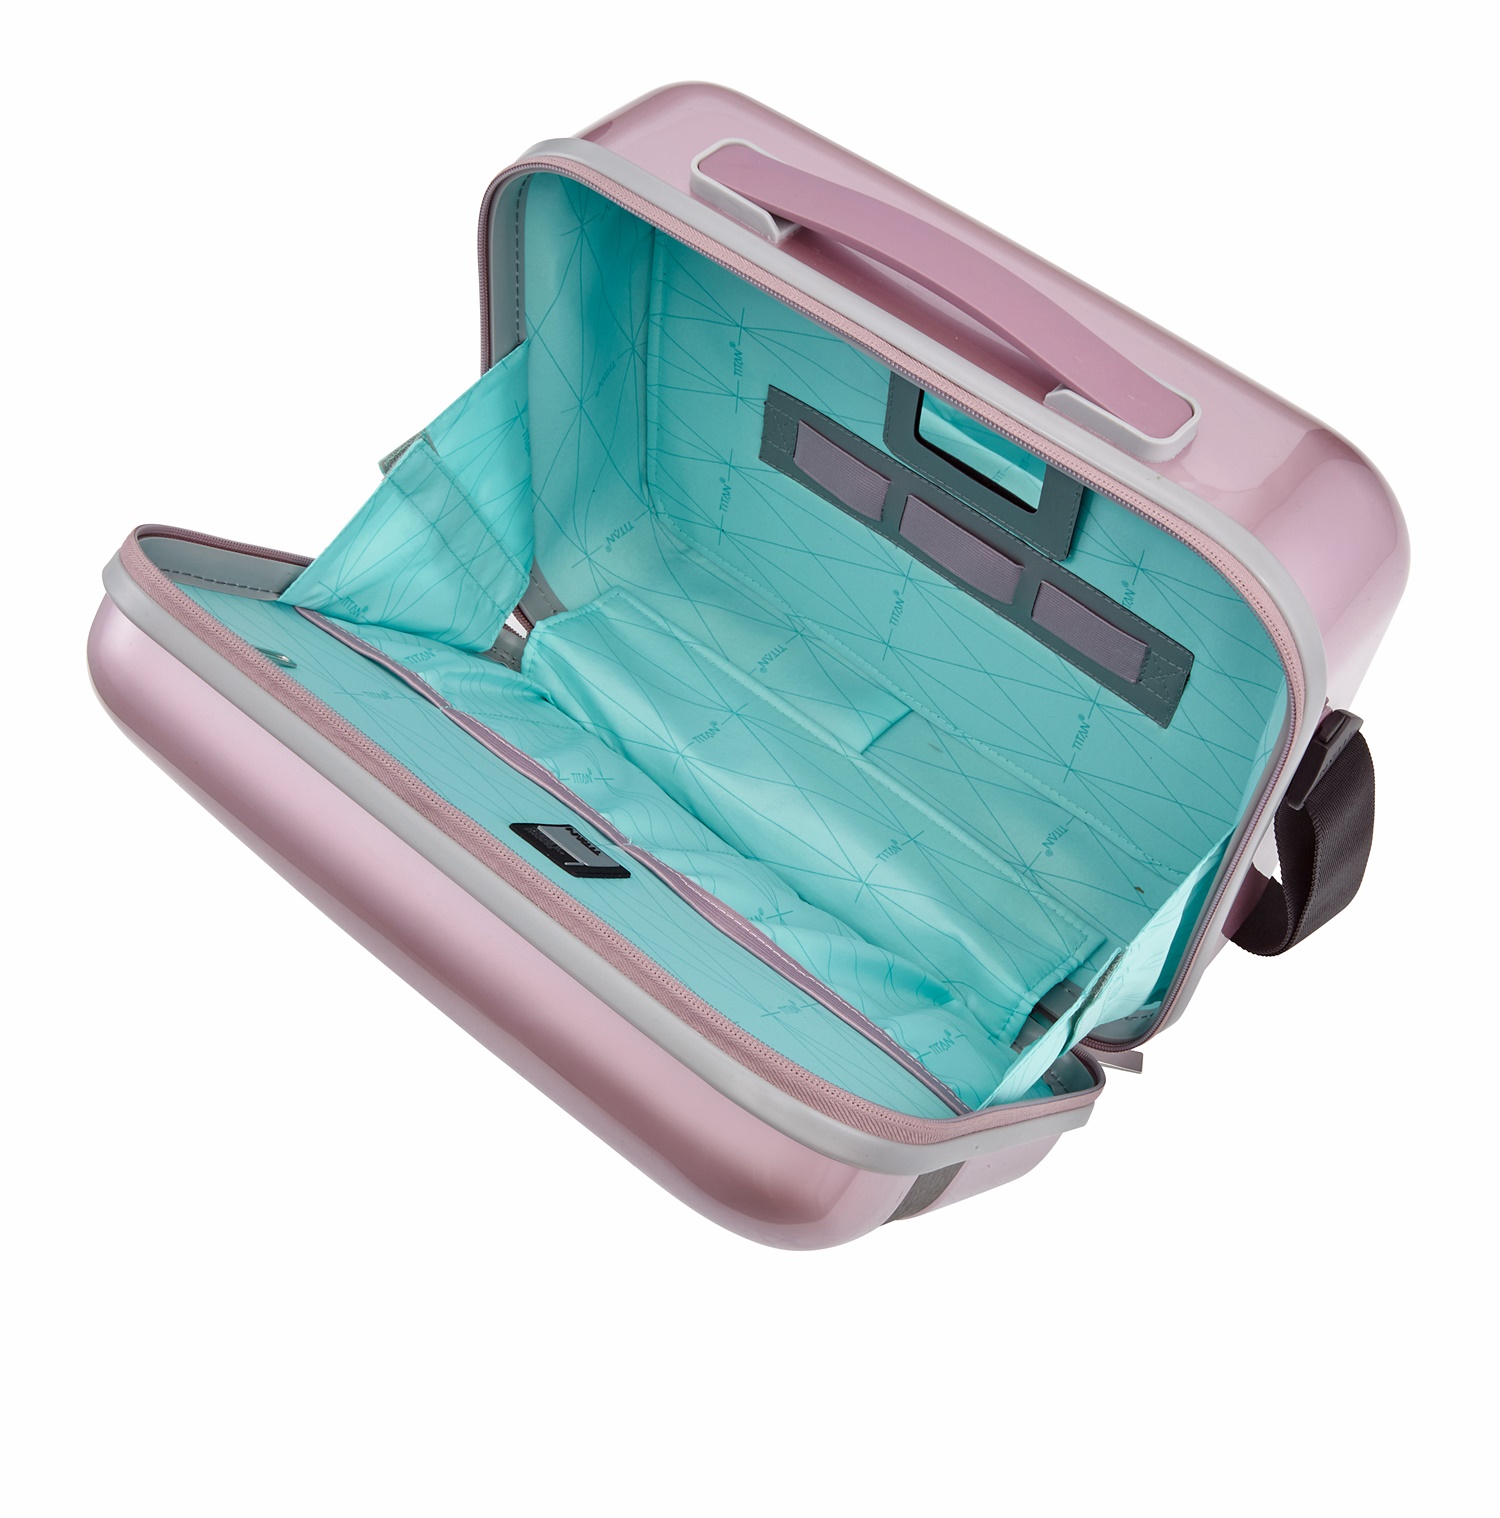 Titan Koffer Mini Set Spotlight Gr.S+ Beautycase Wild Rose